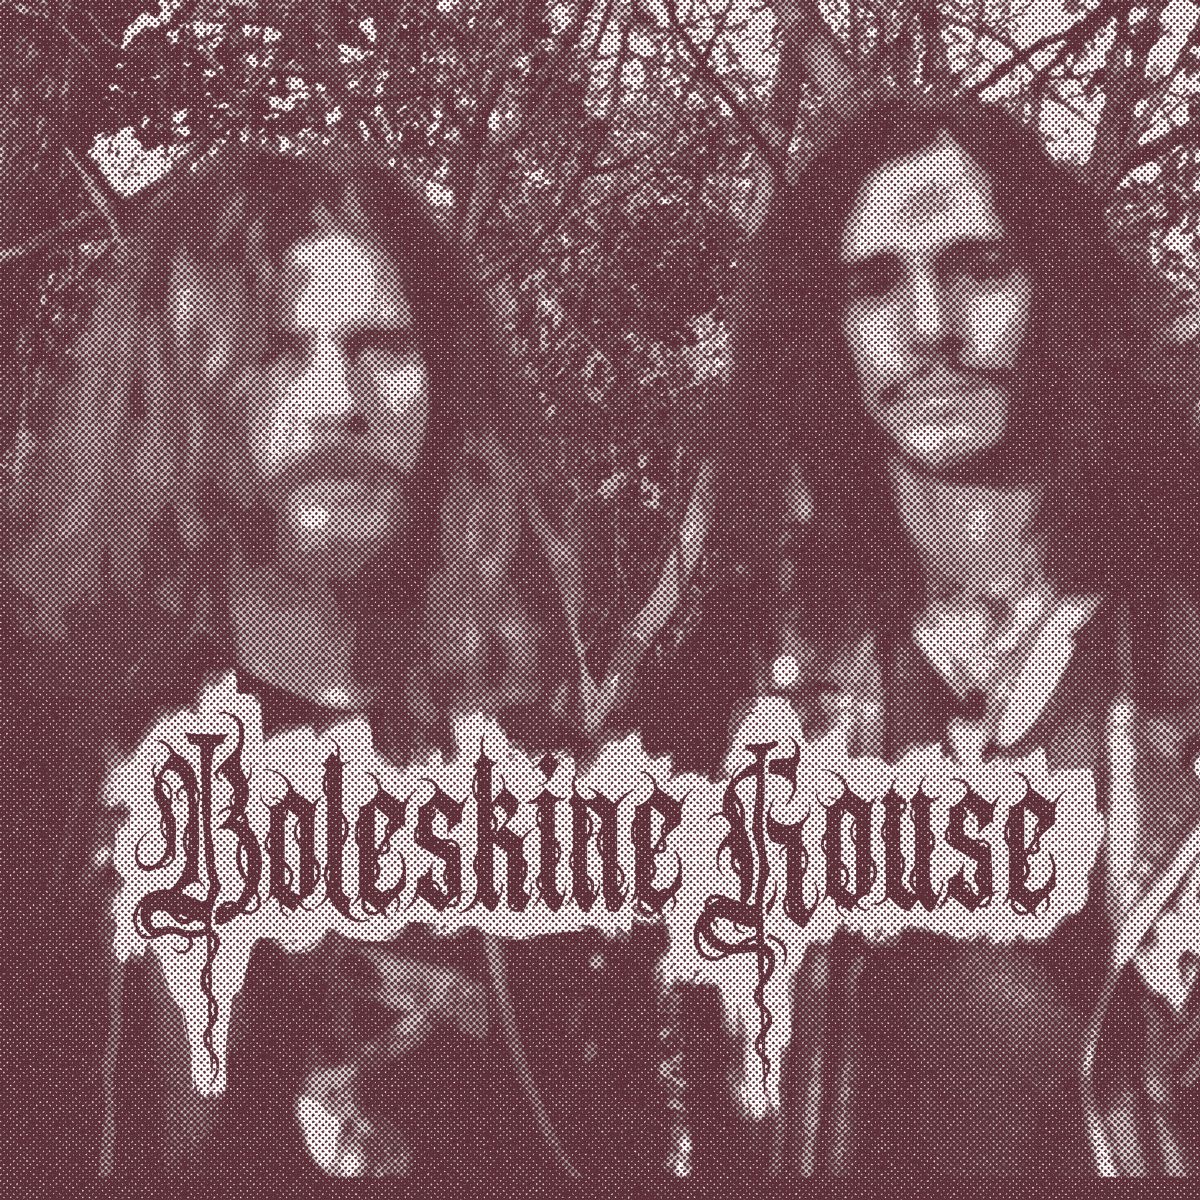 BOLESKINE HOUSE: Il singolo “Black House Painters” dall’album di debutto per Masked Dead Records